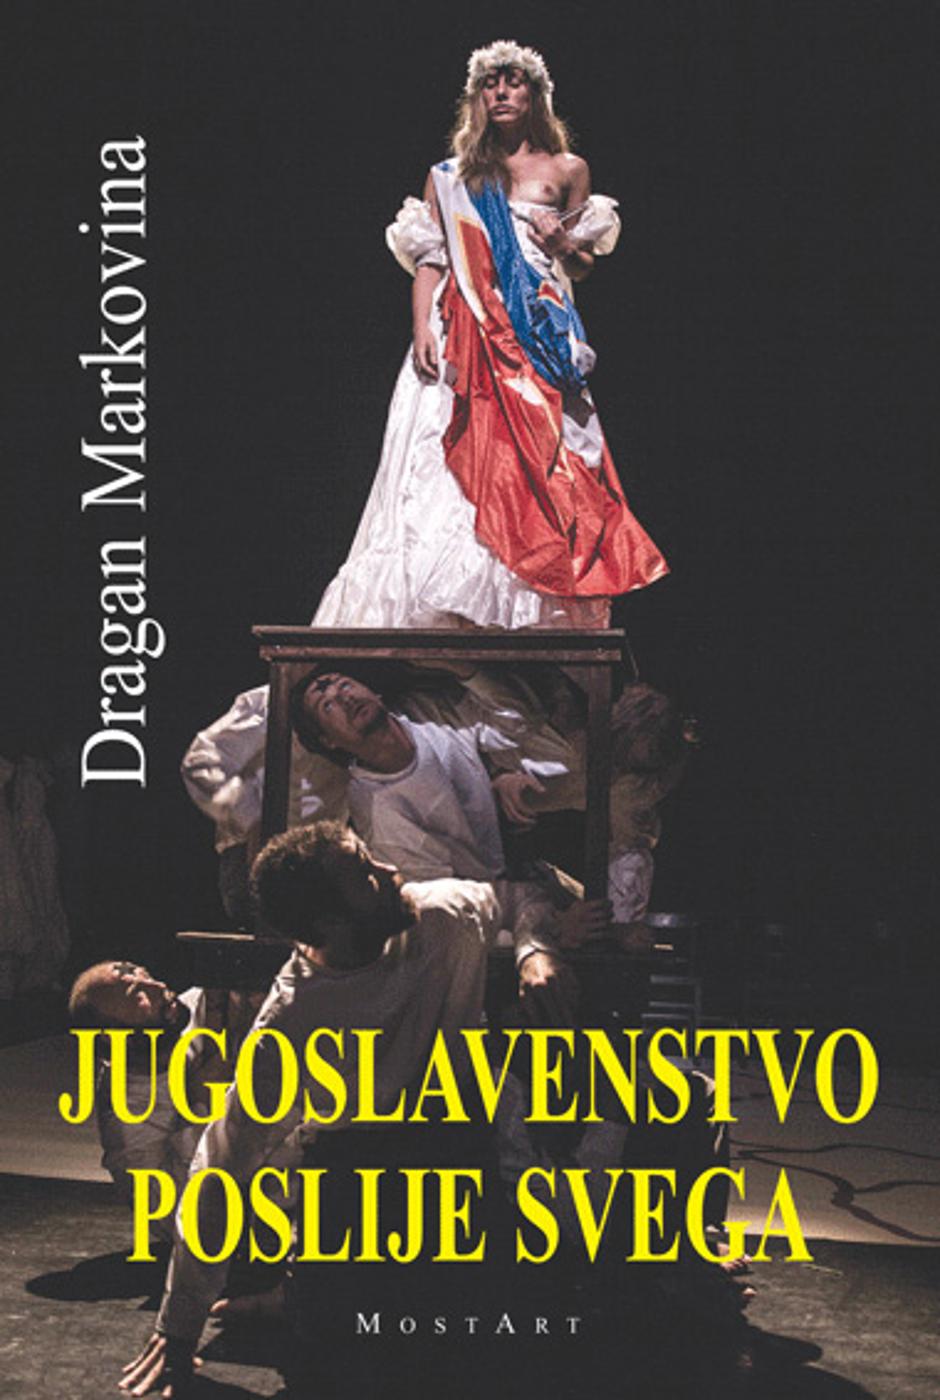 "Jugoslavenstvo poslije svega" | Author: mostart.co.rs